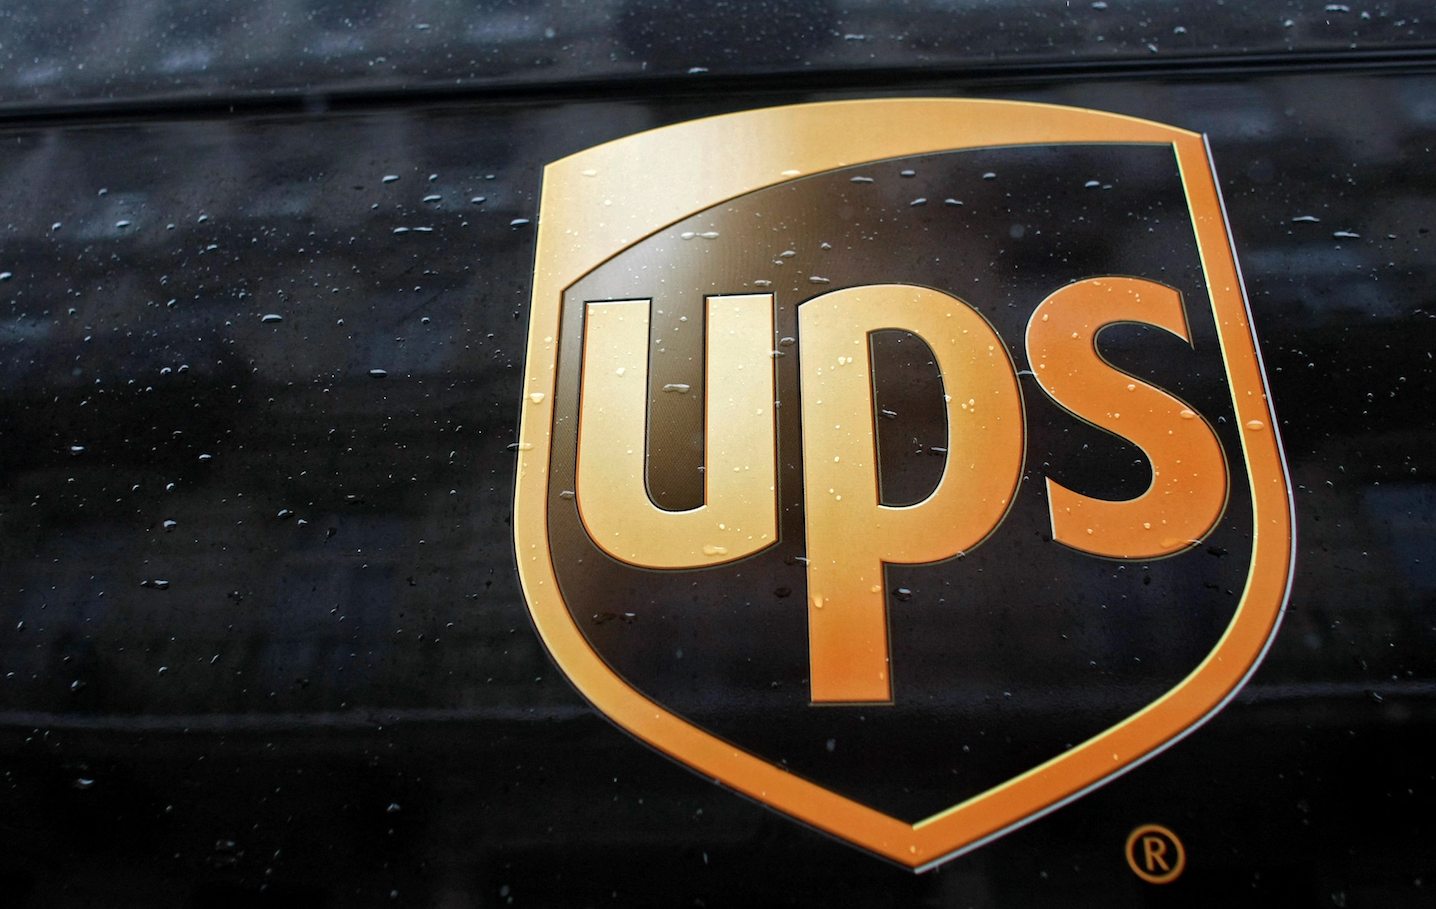 El gigante de la mensajería UPS despedirá a 12,000 trabajadores